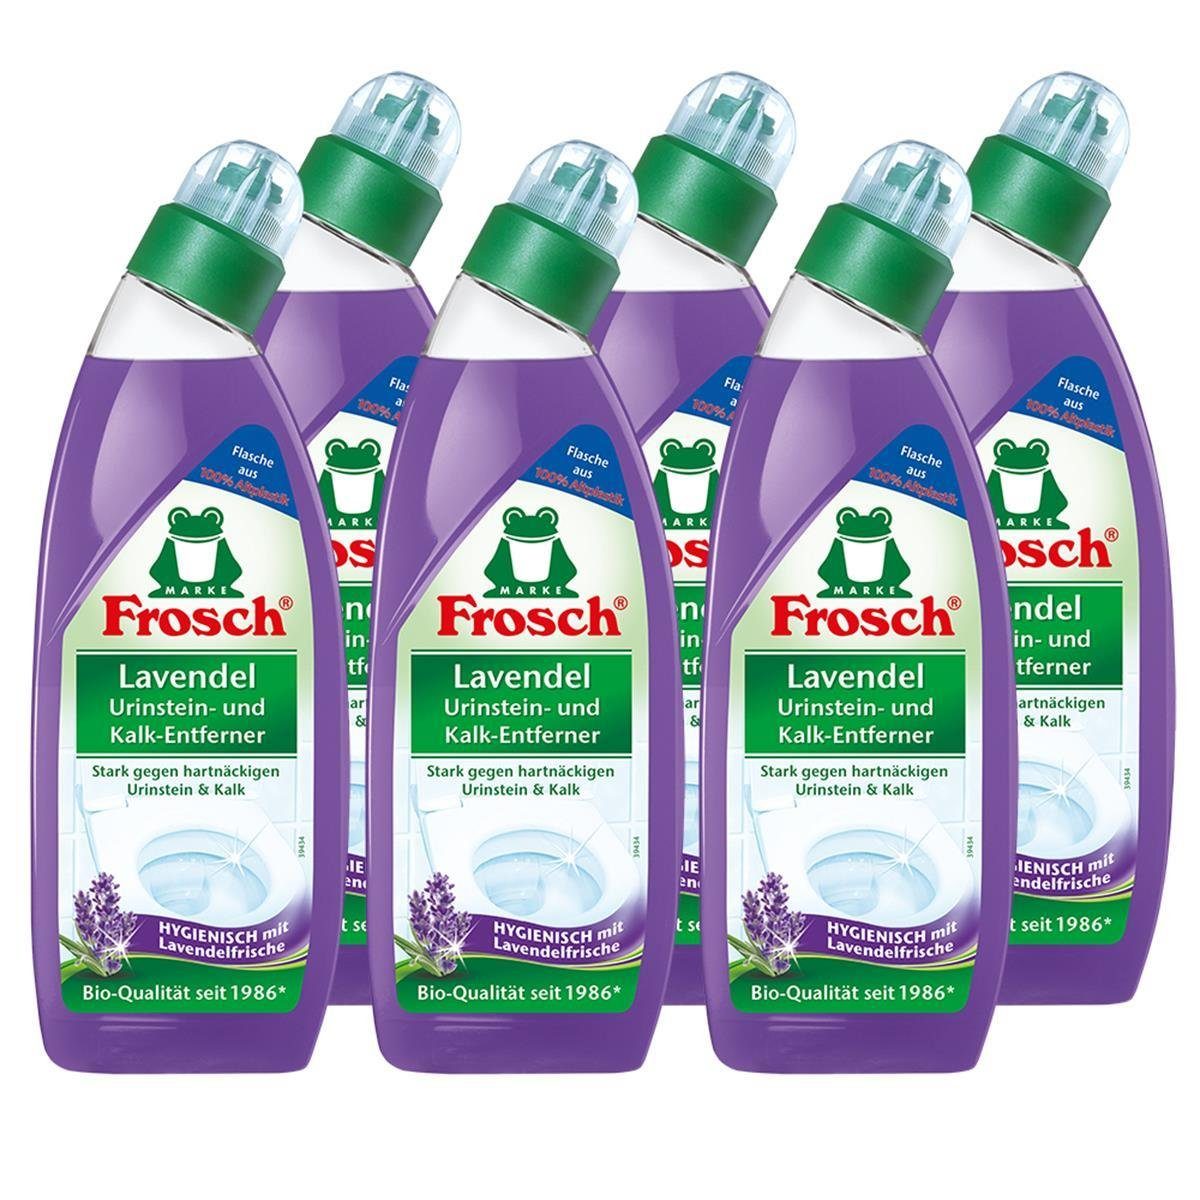 Hygienisch 750 ml - 6x Frosch Lavendel Urinstein- m und Kalk-Entferner WC-Reiniger FROSCH